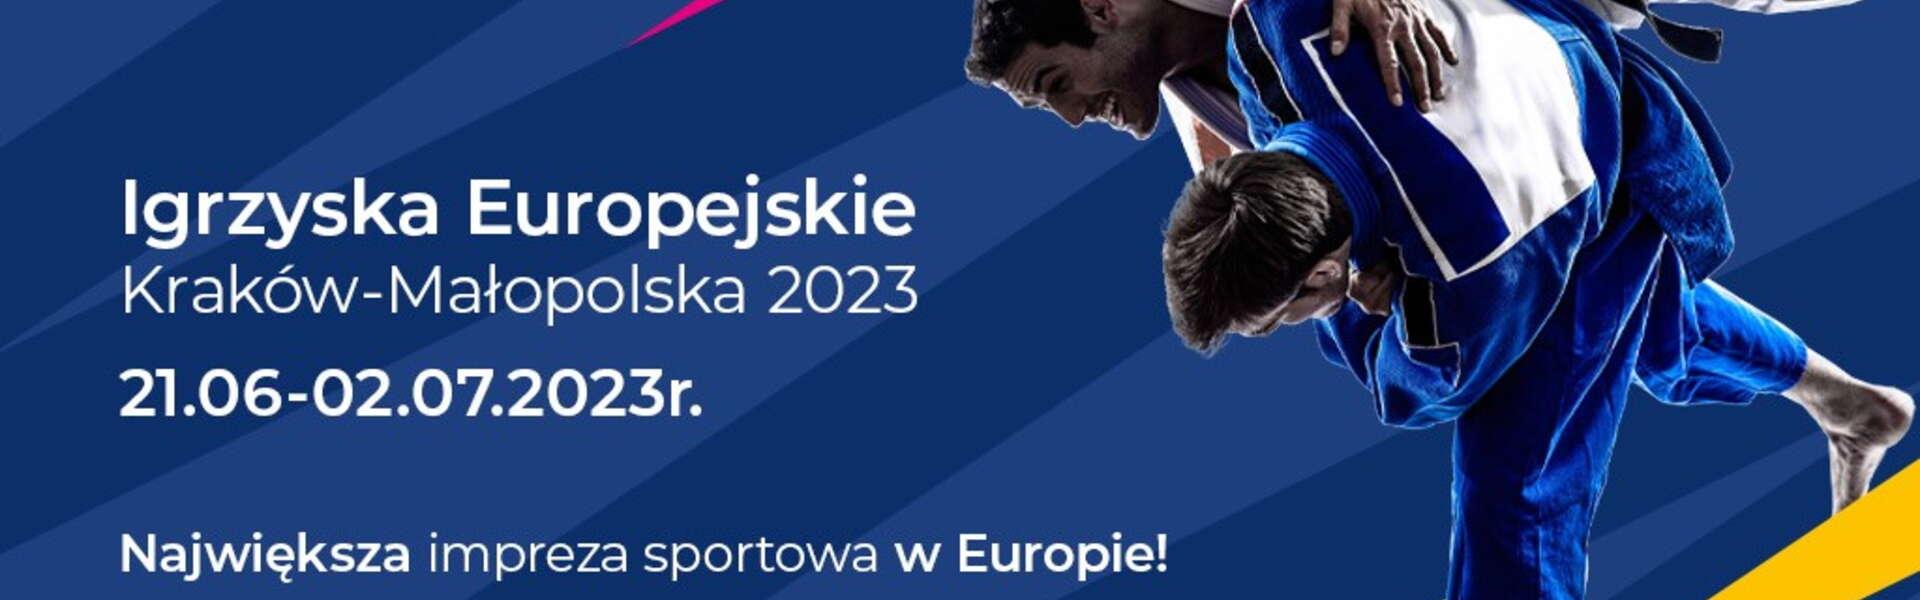 Image: European Games Kraków 2023